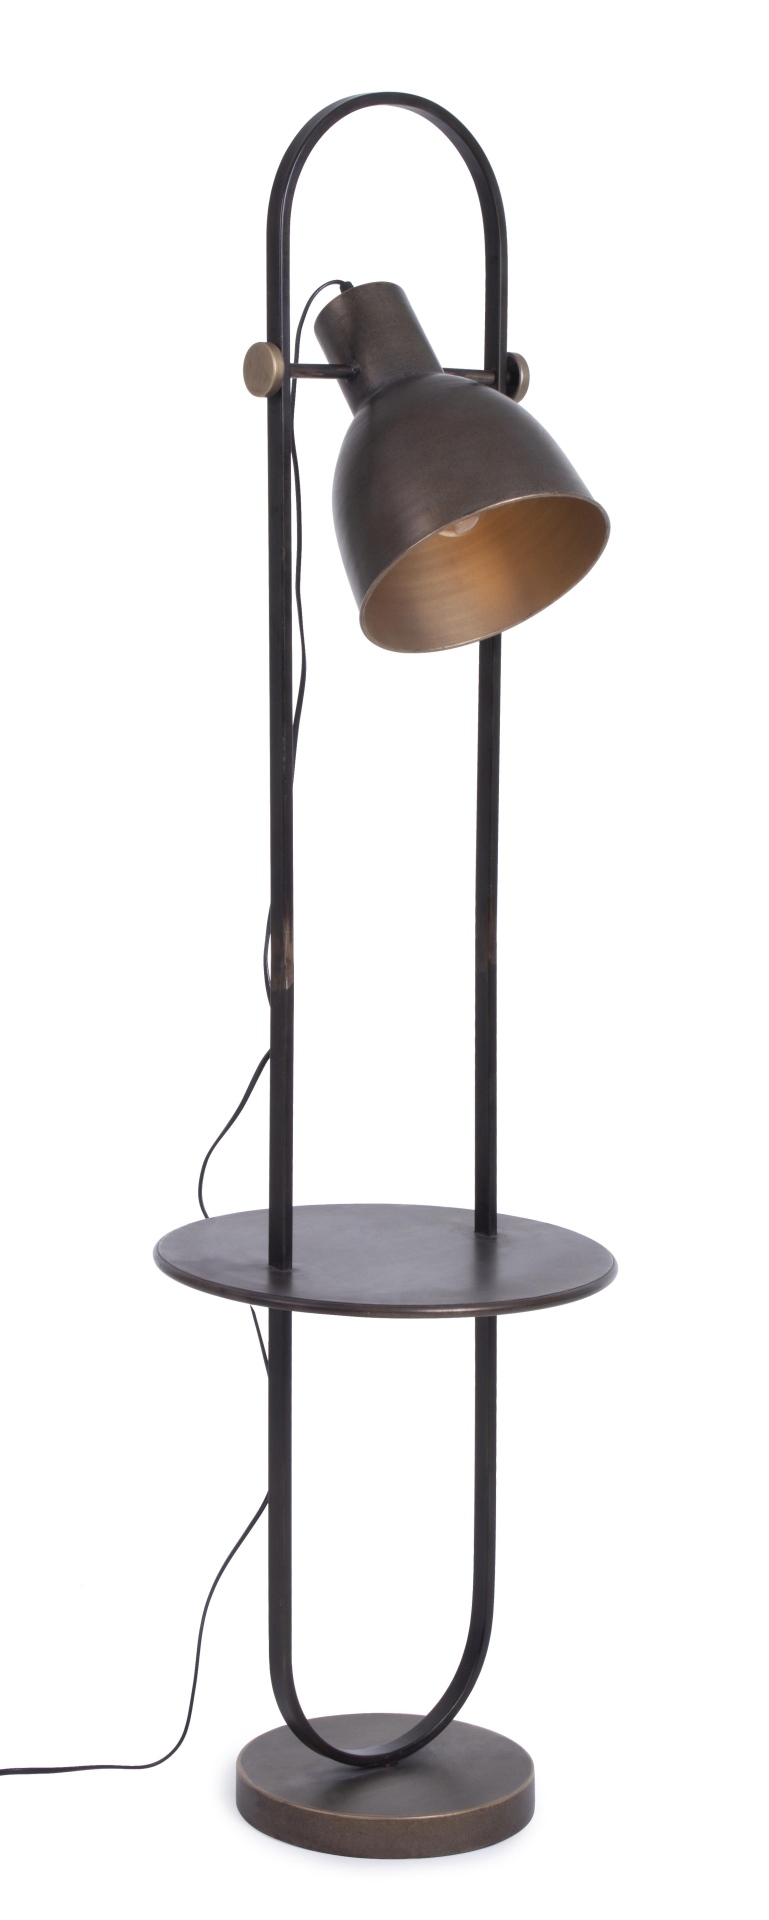 Die Stehleuchte ODD überzeugt mit ihrem klassischen Design. Gefertigt wurde sie aus Metall, welches einen schwarzen Farbton besitzt. Die Lampe besitzt eine Holzplatte in einer natürlichen Farbe. Die Lampe besitzt eine Höhe von 140 cm.